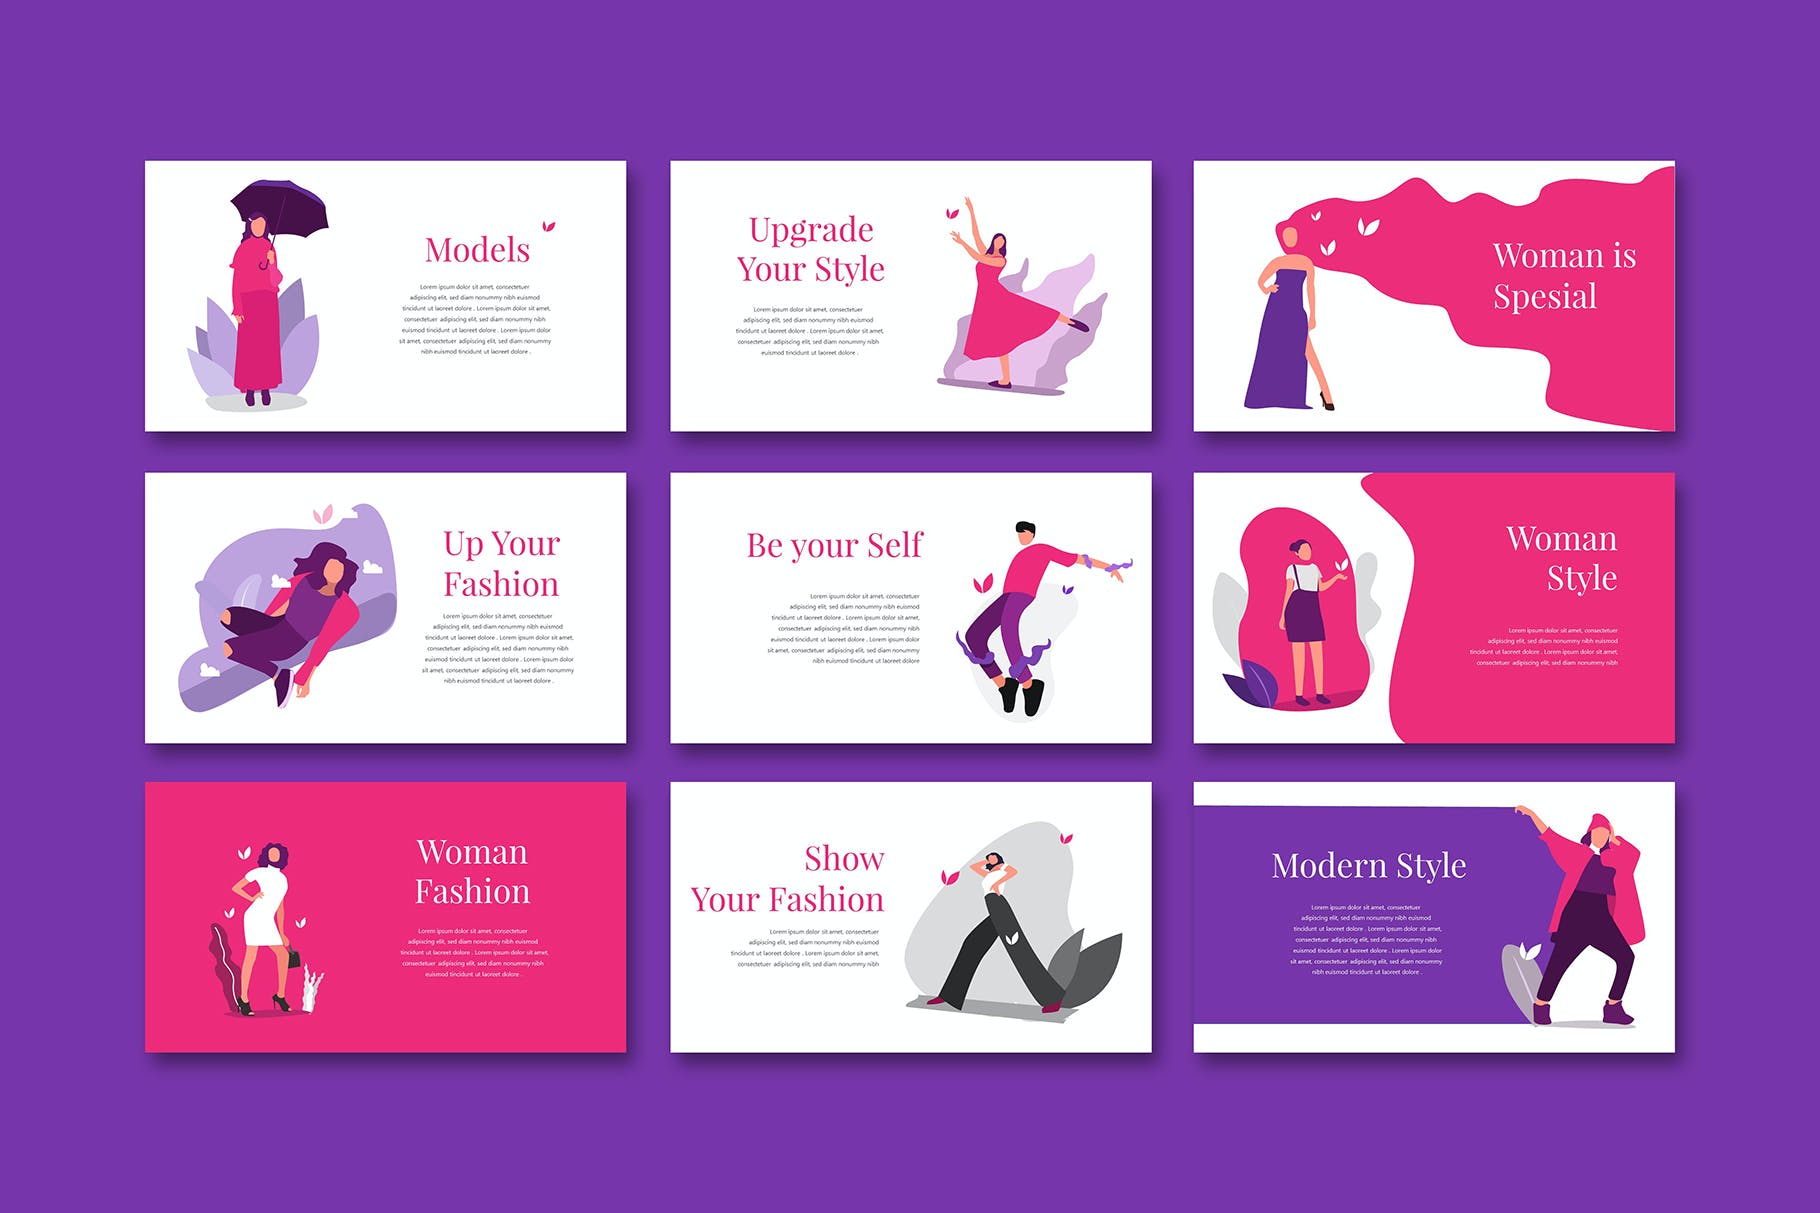 女性时尚演示文稿PPT模板 Erina – Powerpoint Template设计素材模板